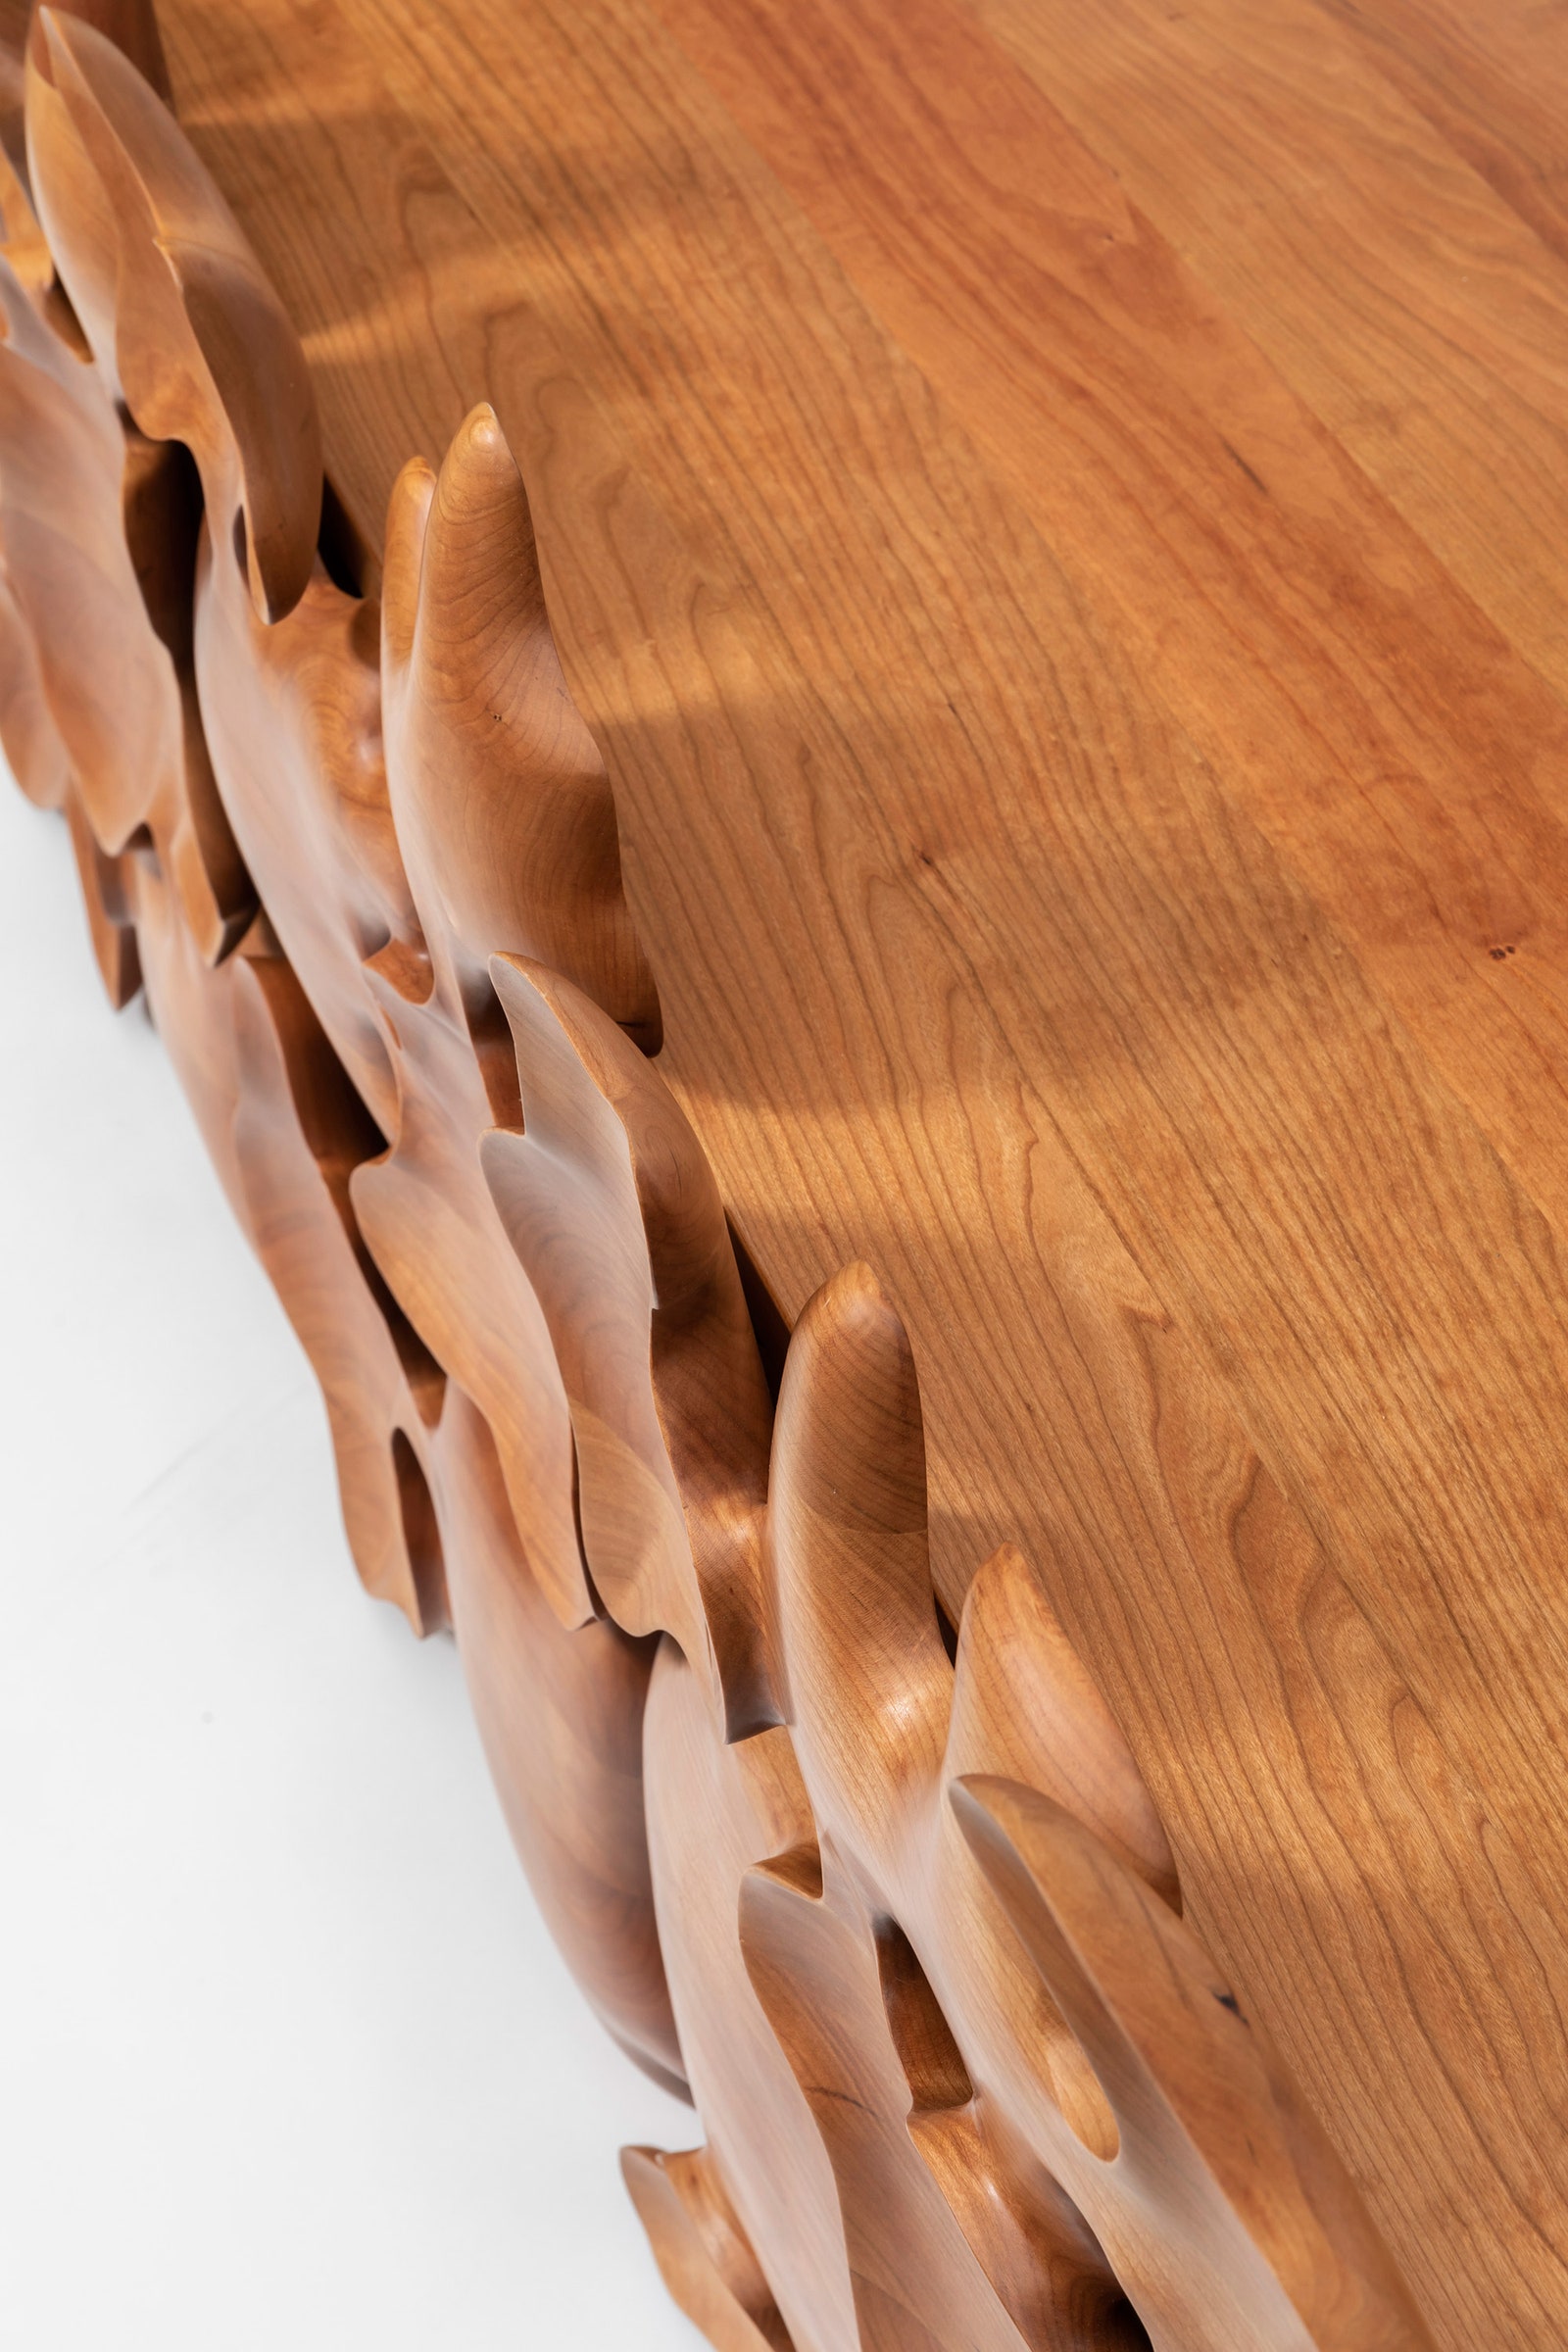 Корейский дизайн фигурная мебель из дерева